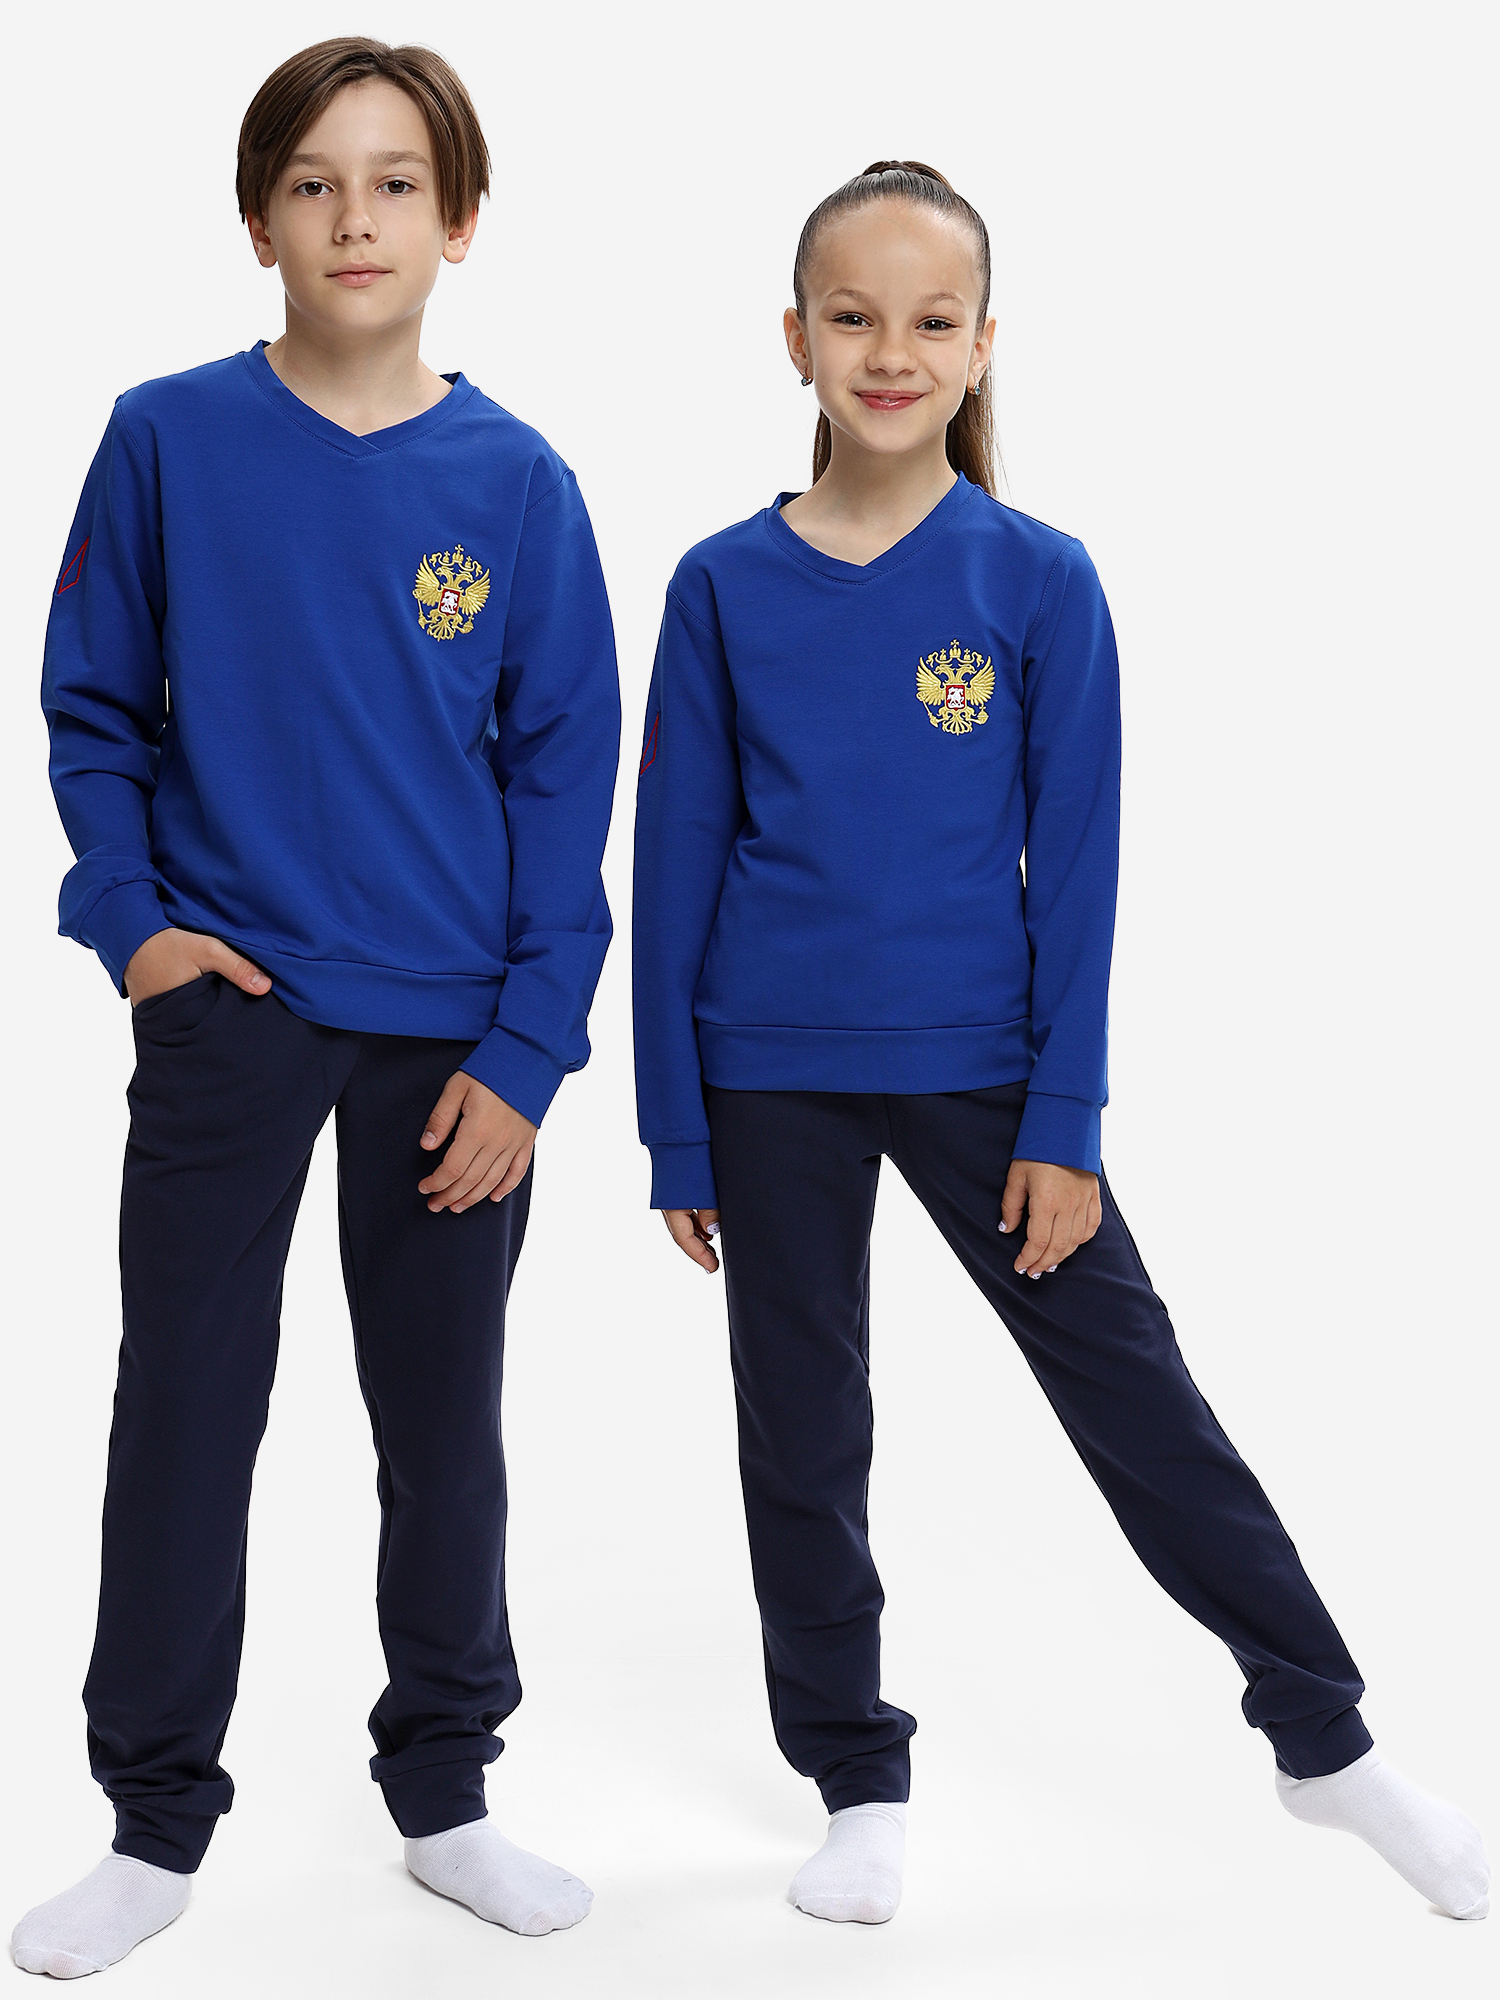 Спортивный костюм детский: для мальчика и девочки WILDWINS, Синий топ спортивный для занятий легкой атлетикой для девочки